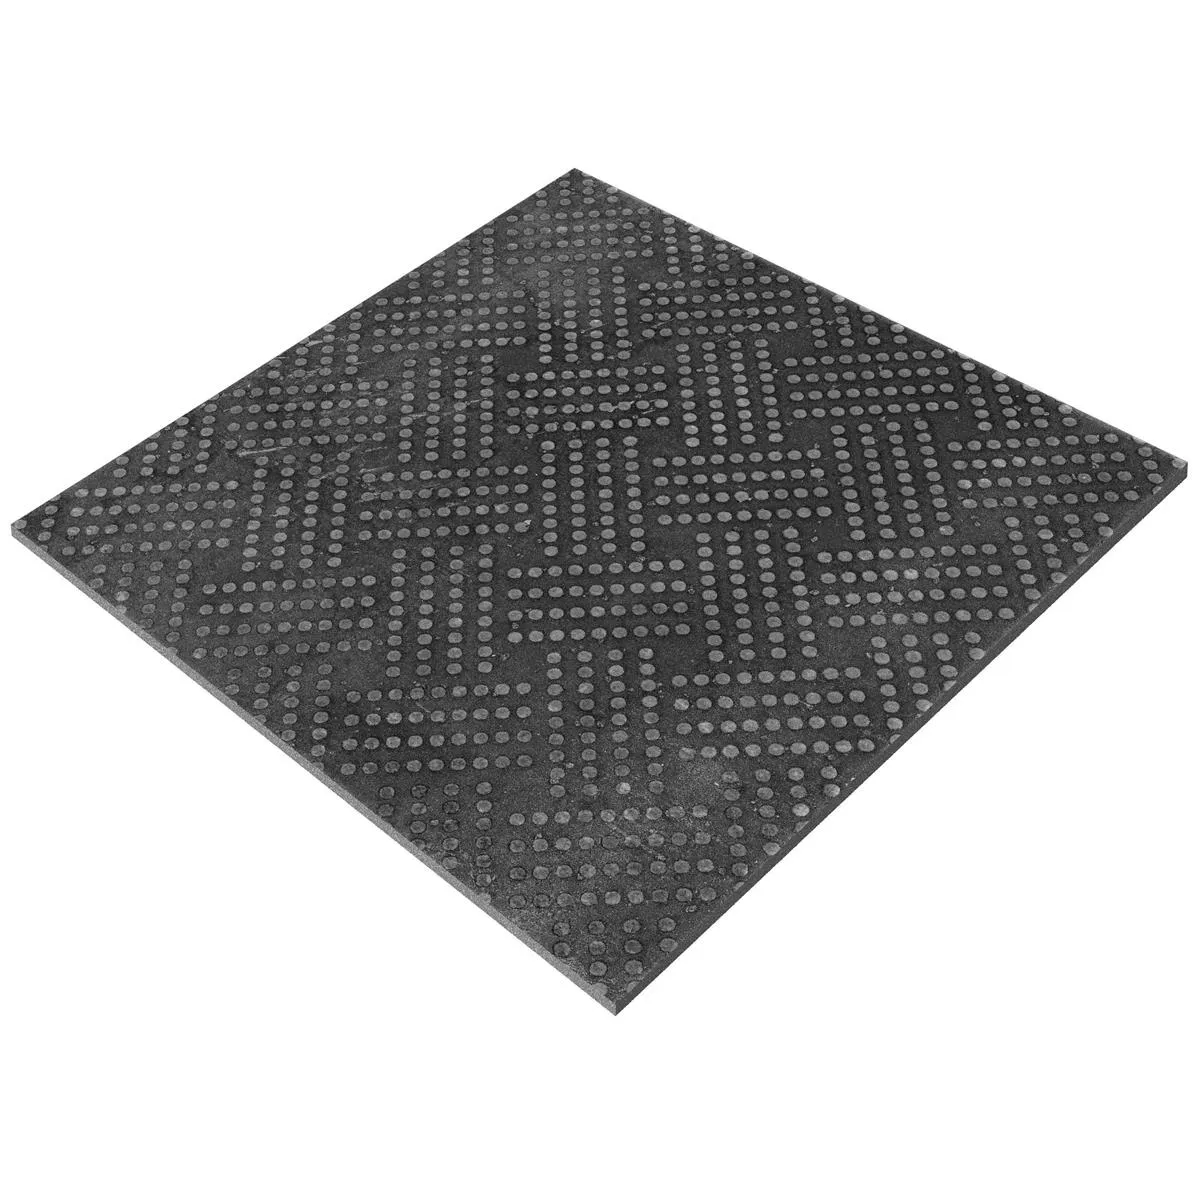 Piastrelle Chicago Ottica Metallo Antracite R9 - 18,5x18,5cm Pattern 1